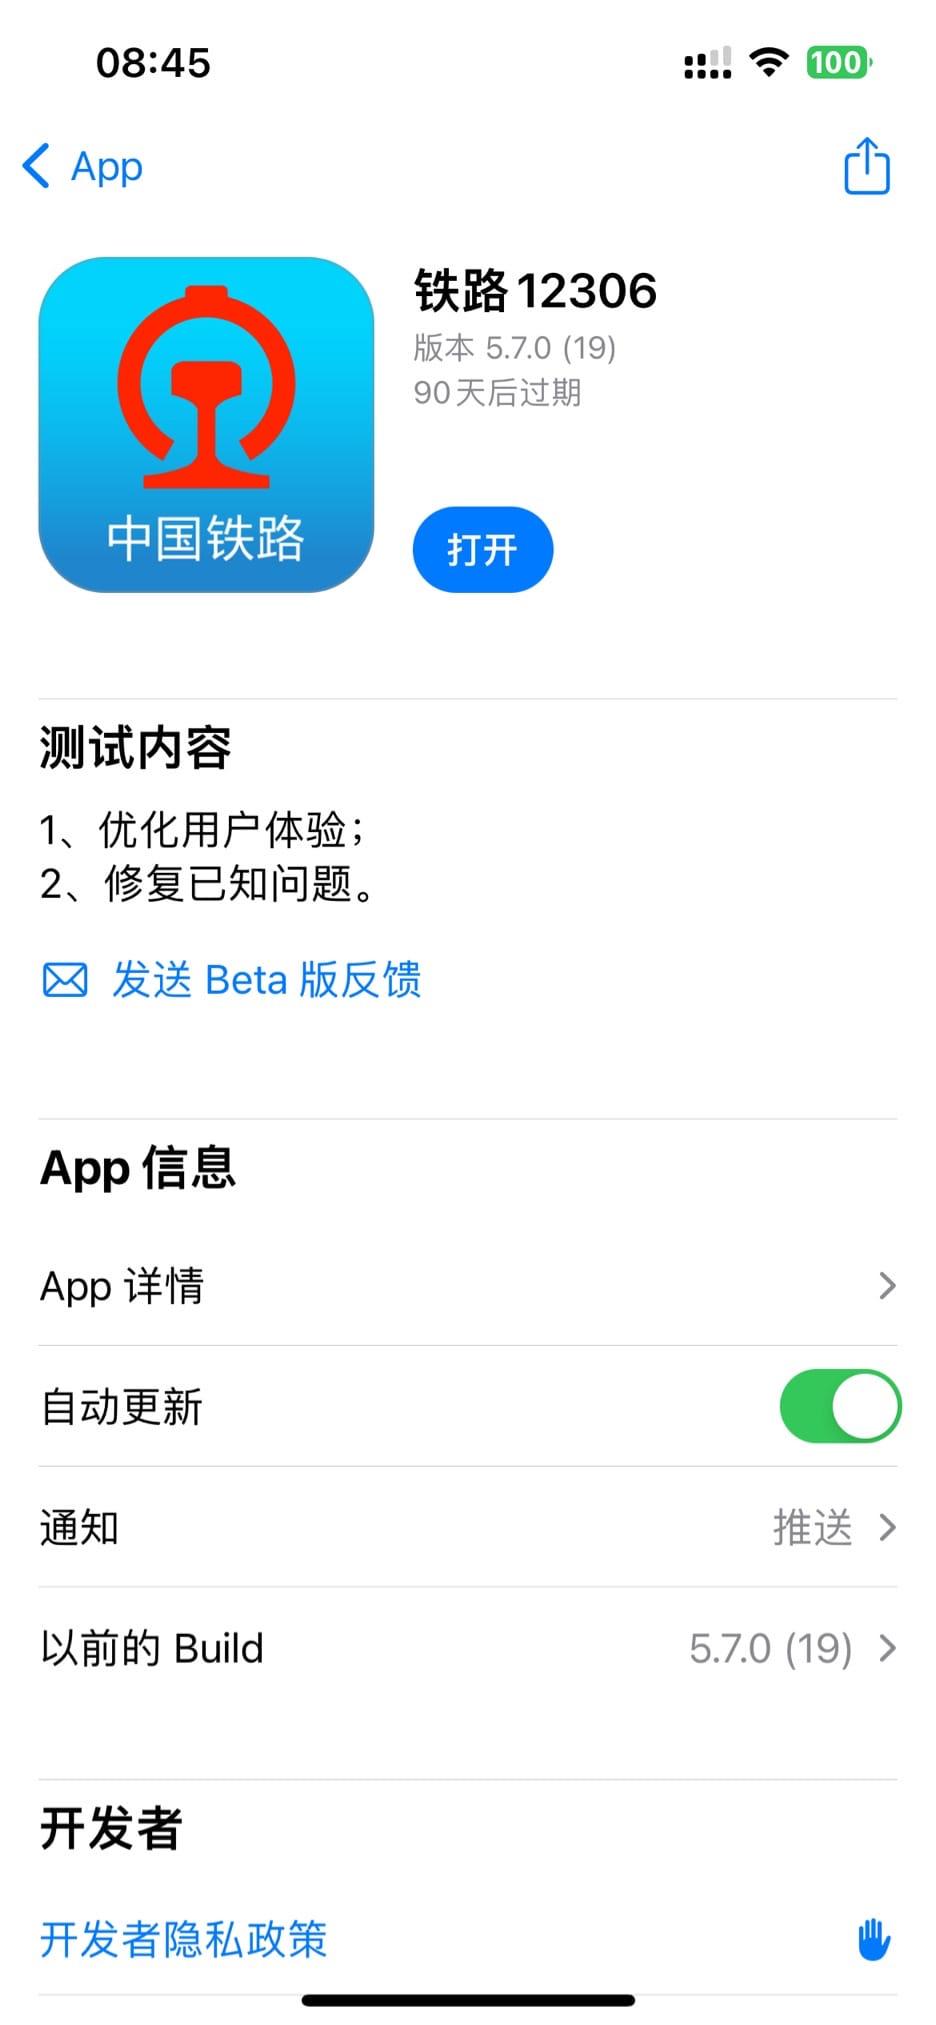 消息称 iOS 版铁路 12306 App 正内测适配实时活动，可显示车次号、始发终到情况